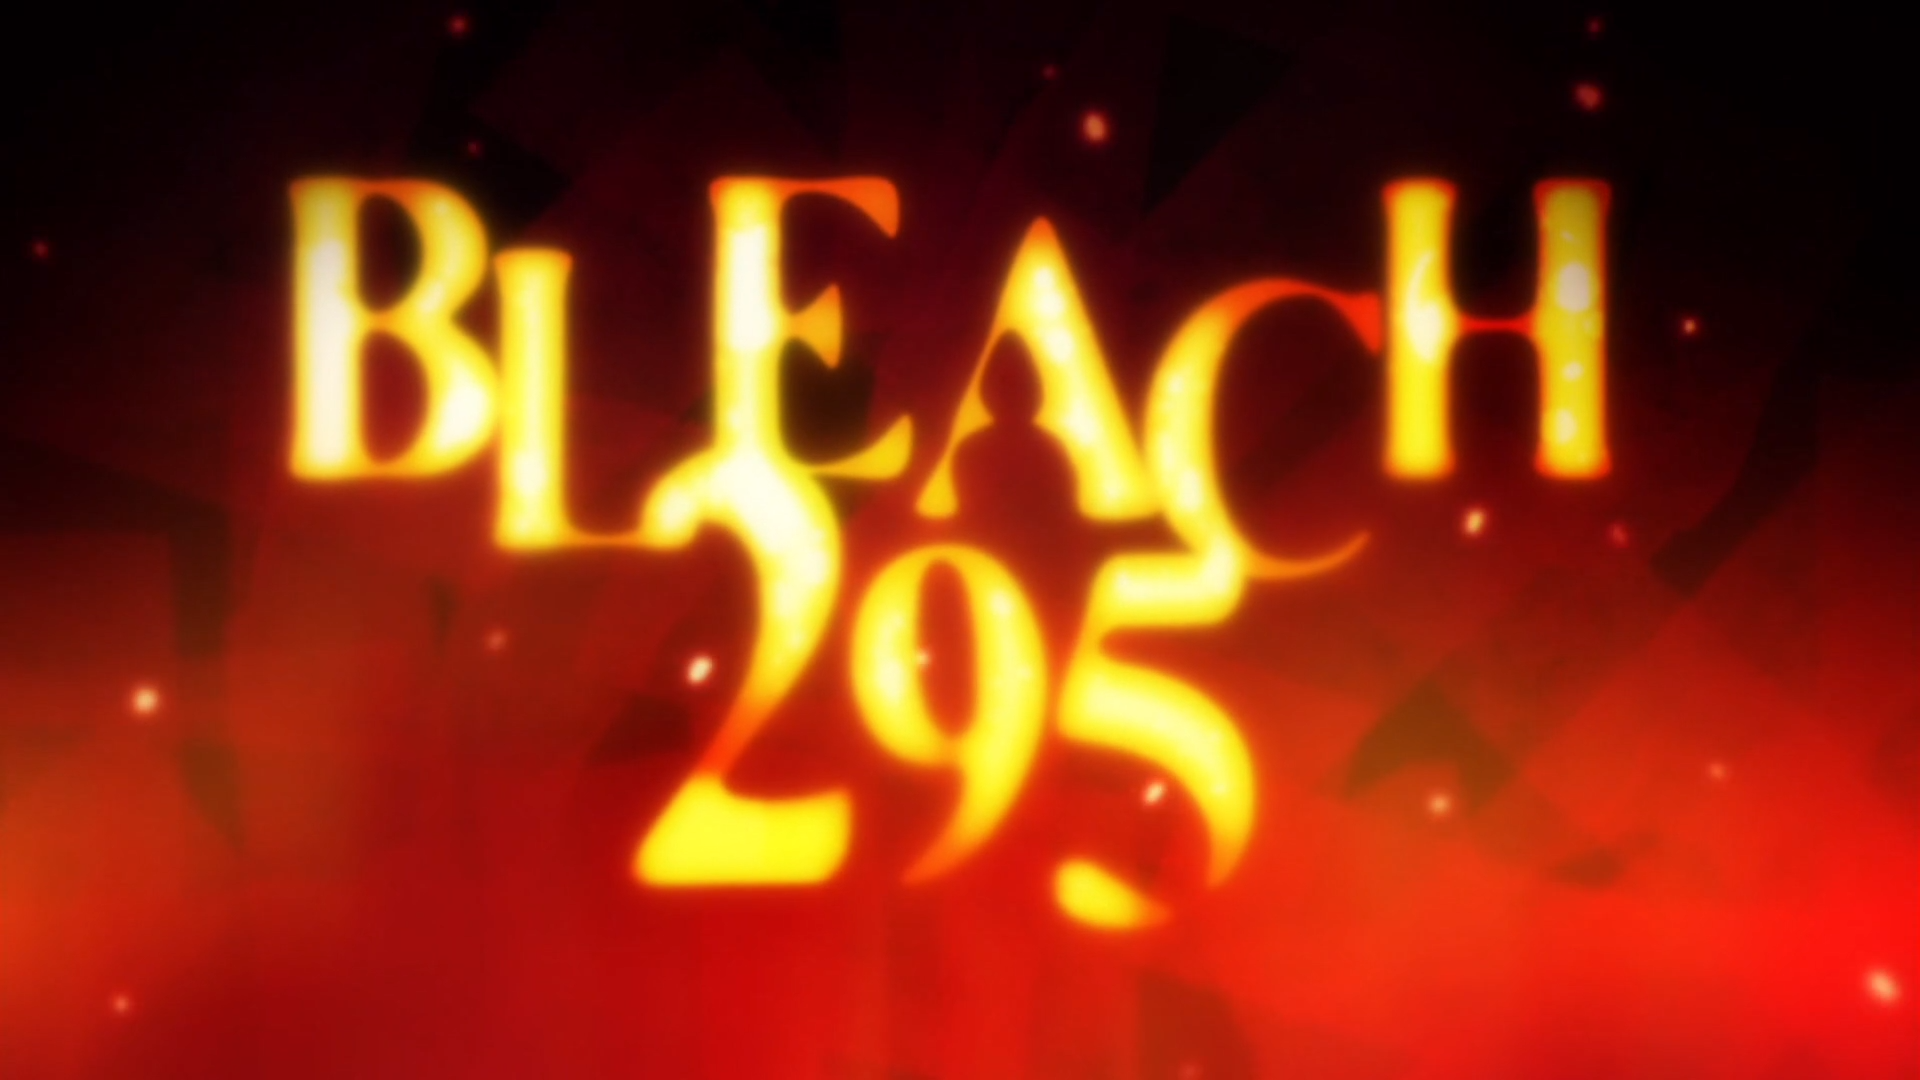 ゲタ帽子🇳🇱 on X: Last bleach episode aired exactly ten years